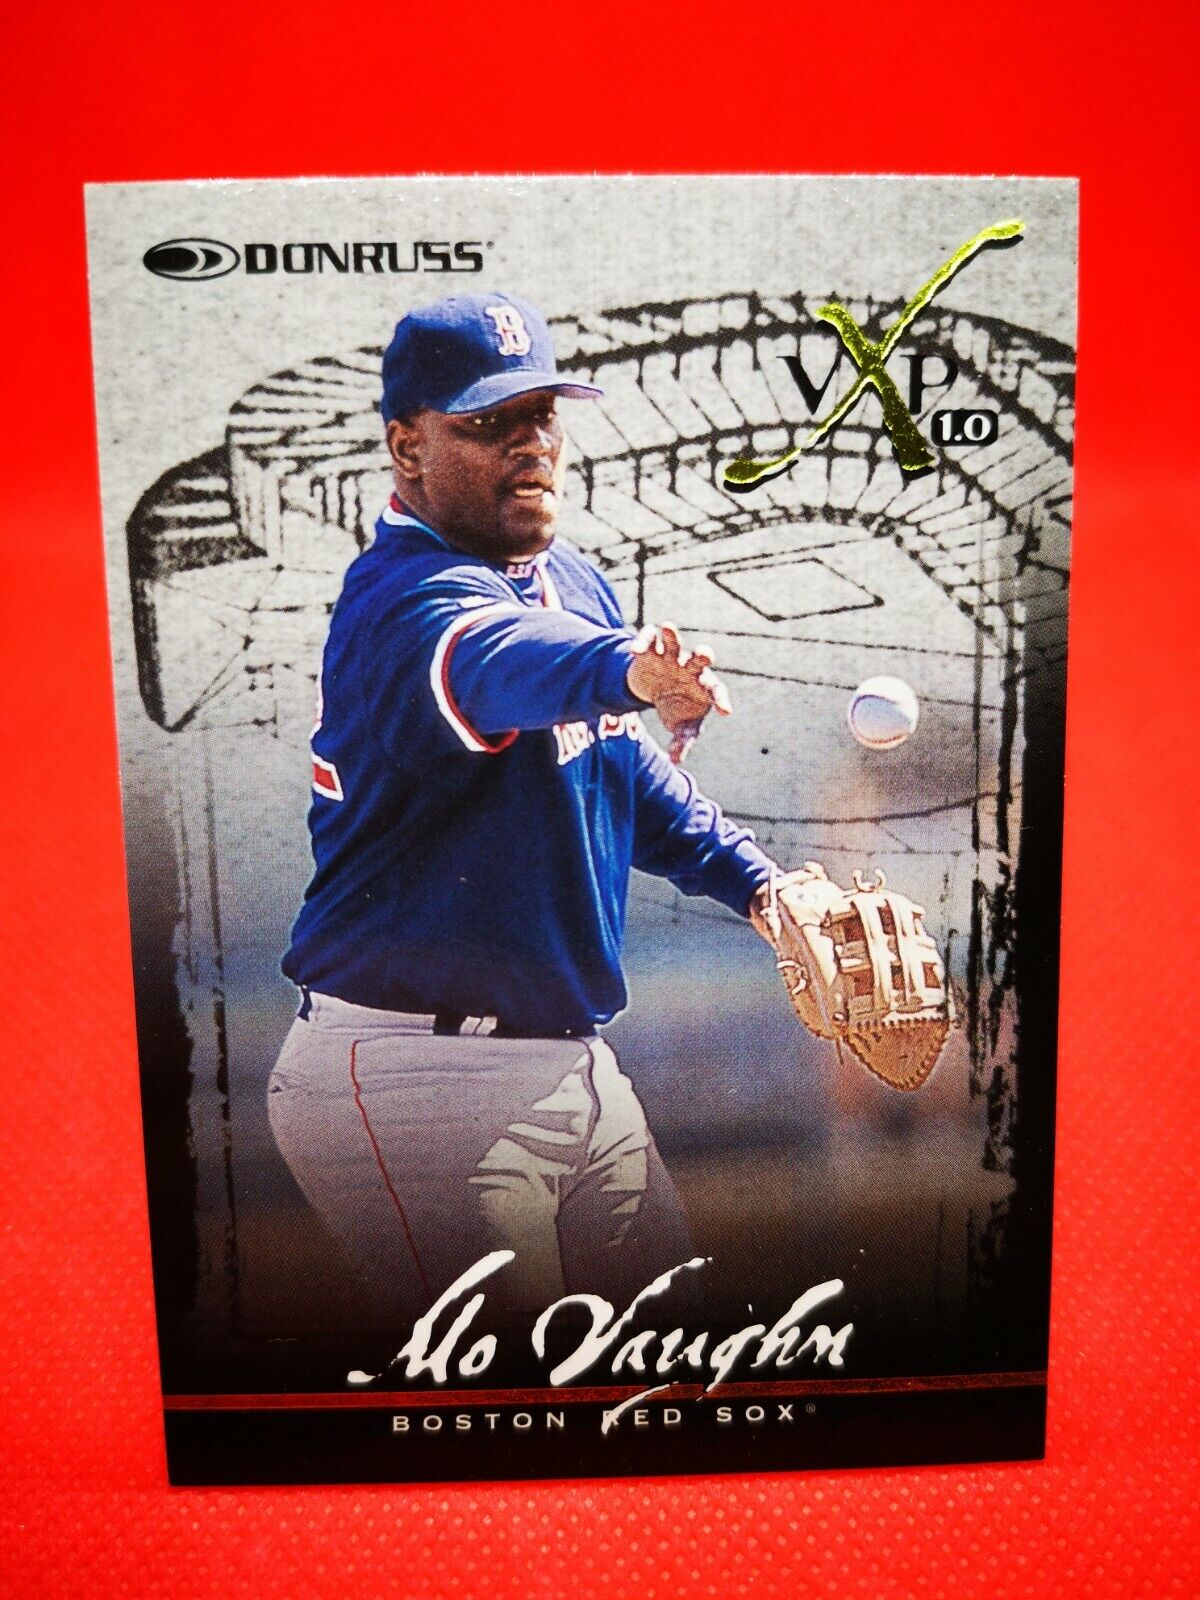 1997 Donruss MLB NM+/M Boston Red Sox Baseball Card #26MB Vaughn